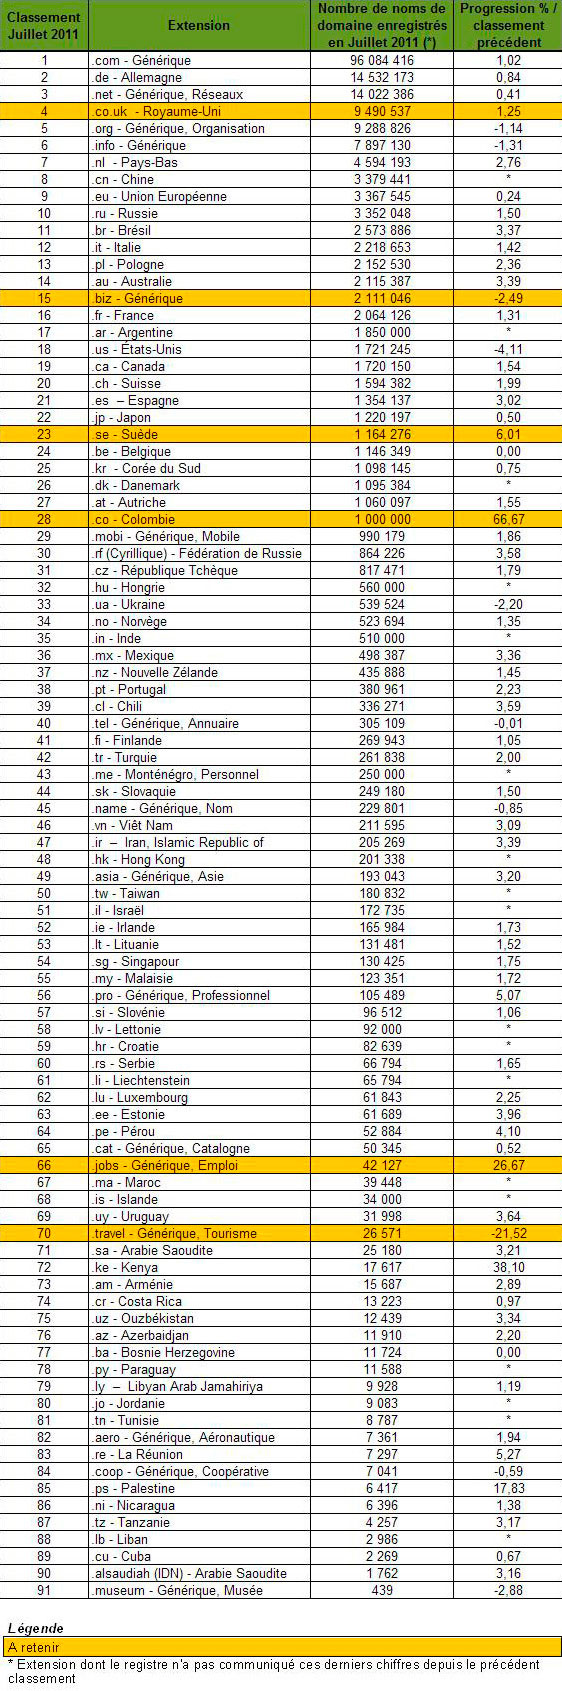 classement des extensions par nombre de noms de domaine en juillet 2011